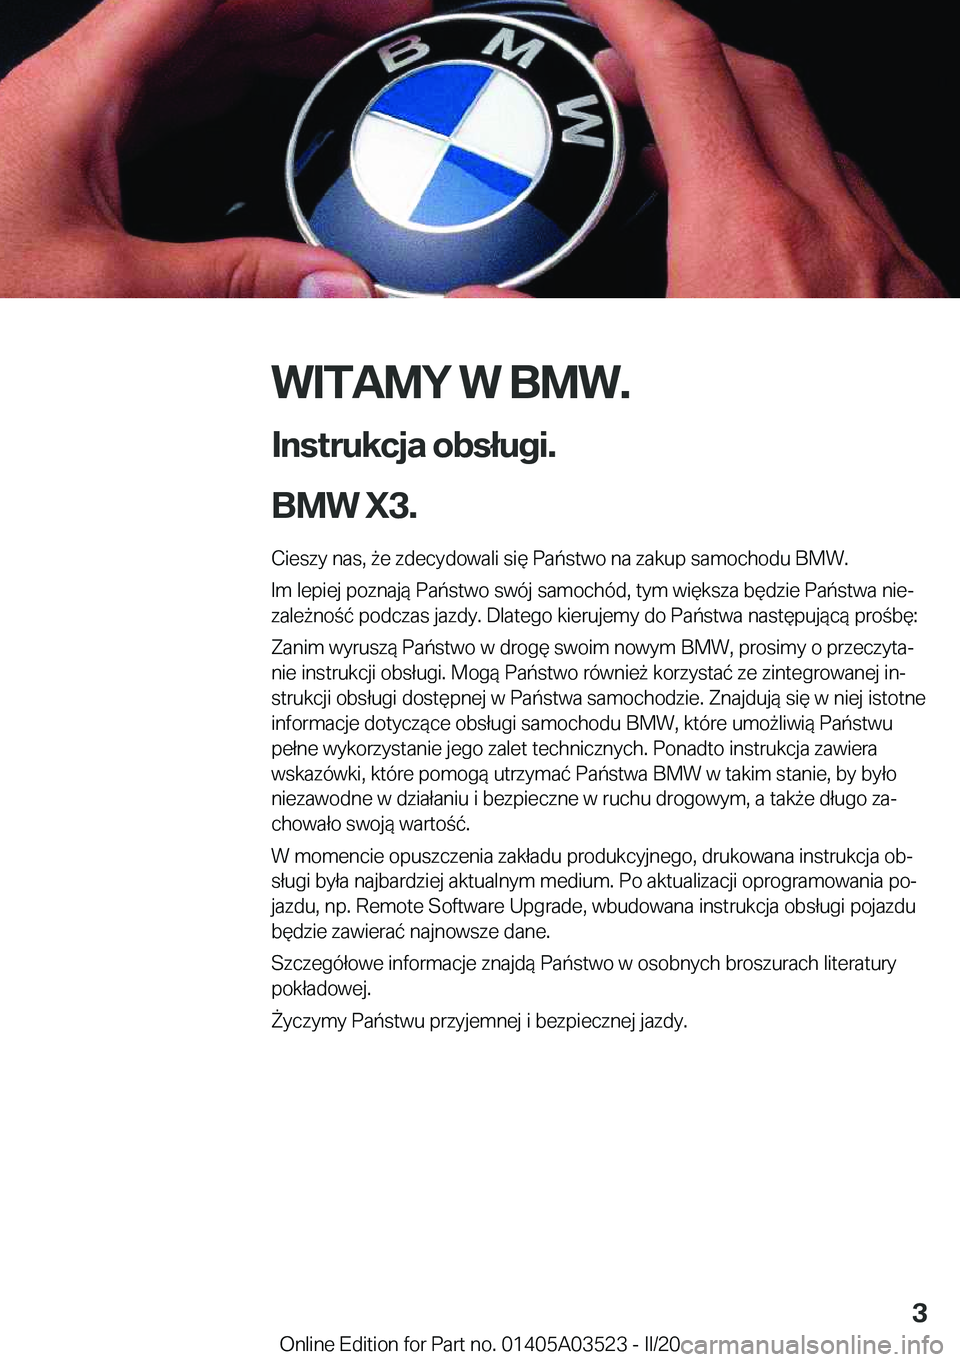 BMW X3 2020  Instrukcja obsługi (in Polish) �W�I�T�A�M�Y��W��B�M�W�.
�I�n�s�t�r�u�k�c�j�a��o�b�s�ł�u�g�i�.
�B�M�W��X�3�. �C�i�e�s�z�y��n�a�s�,�9�e��z�d�e�c�y�d�o�w�a�l�i��s�i�